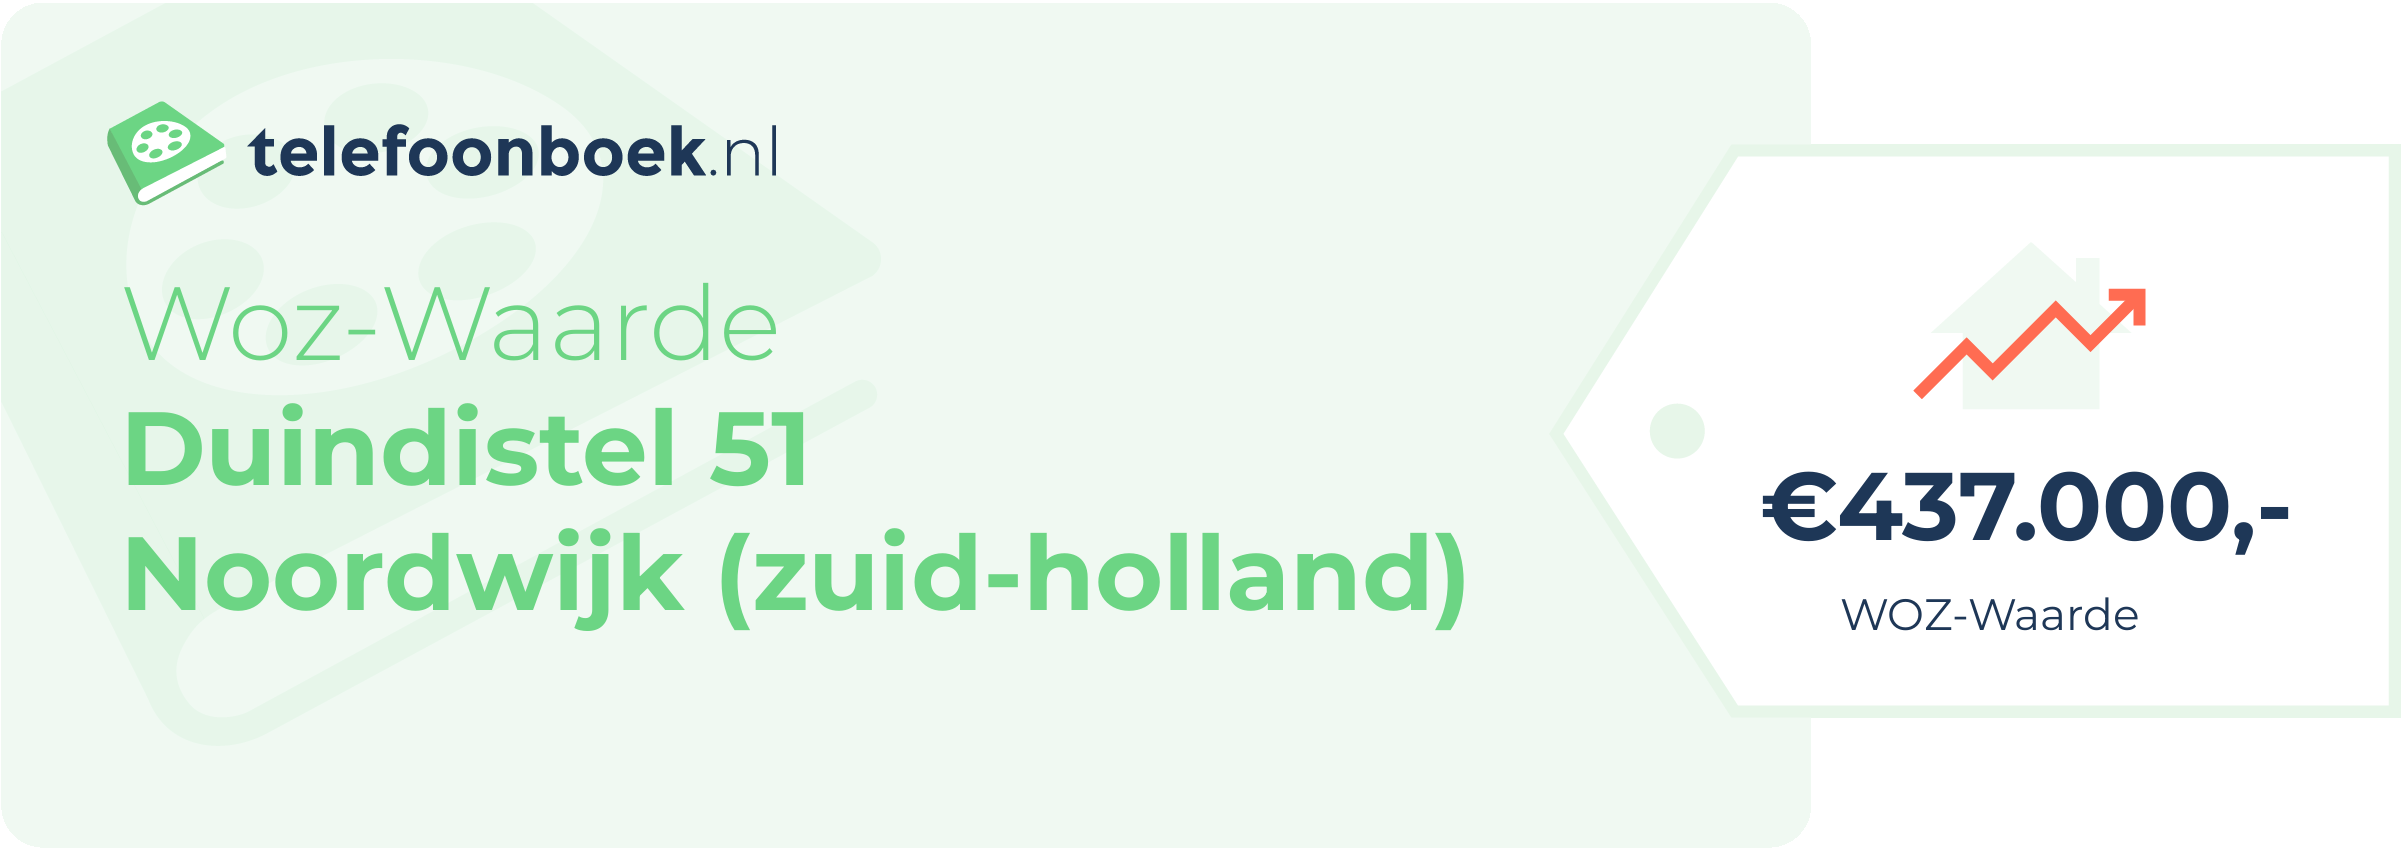 WOZ-waarde Duindistel 51 Noordwijk (Zuid-Holland)